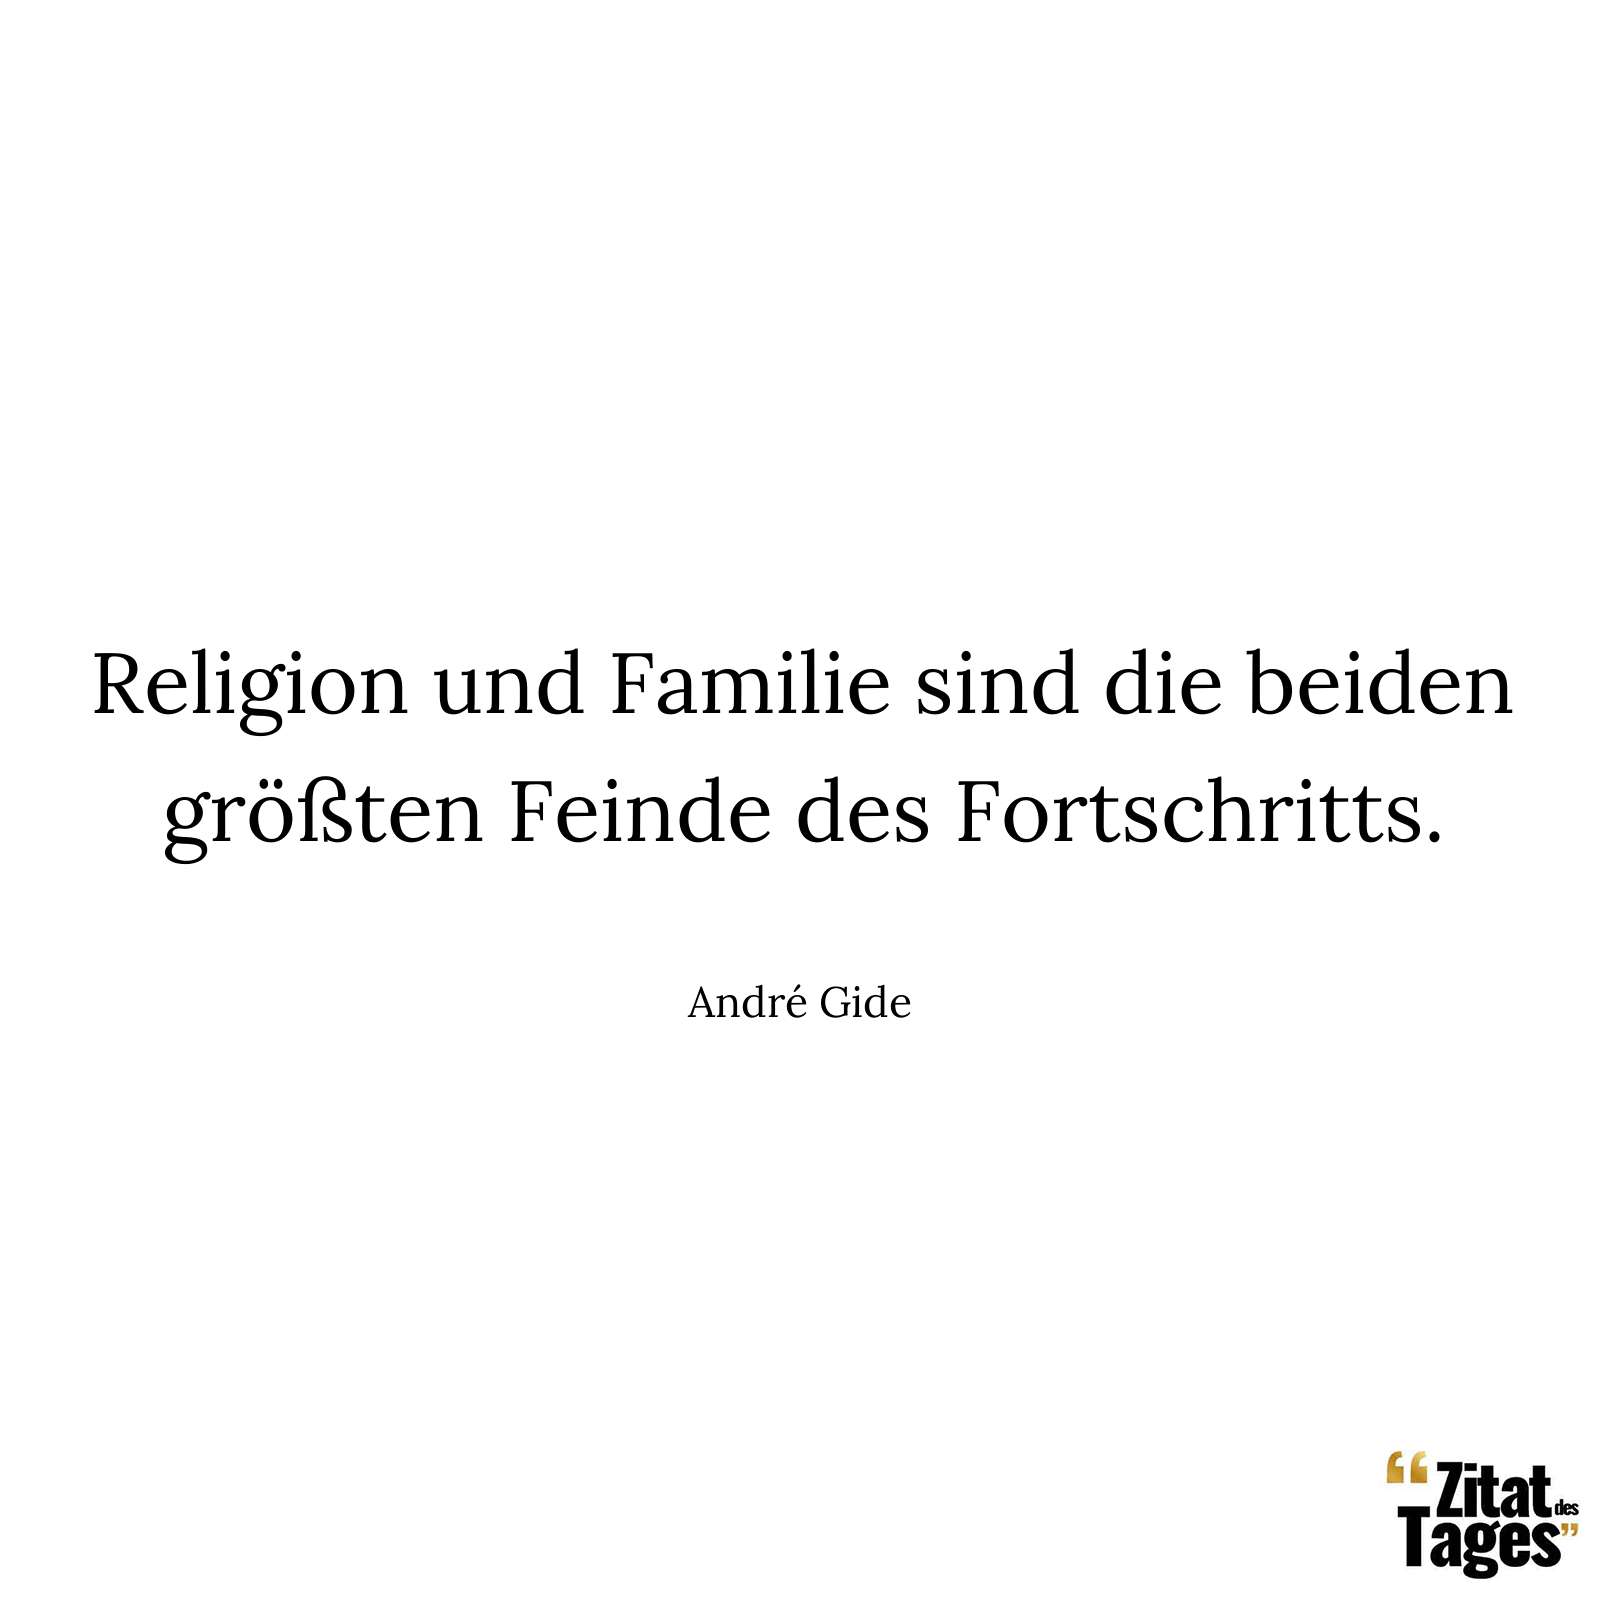 Religion und Familie sind die beiden größten Feinde des Fortschritts. - André Gide